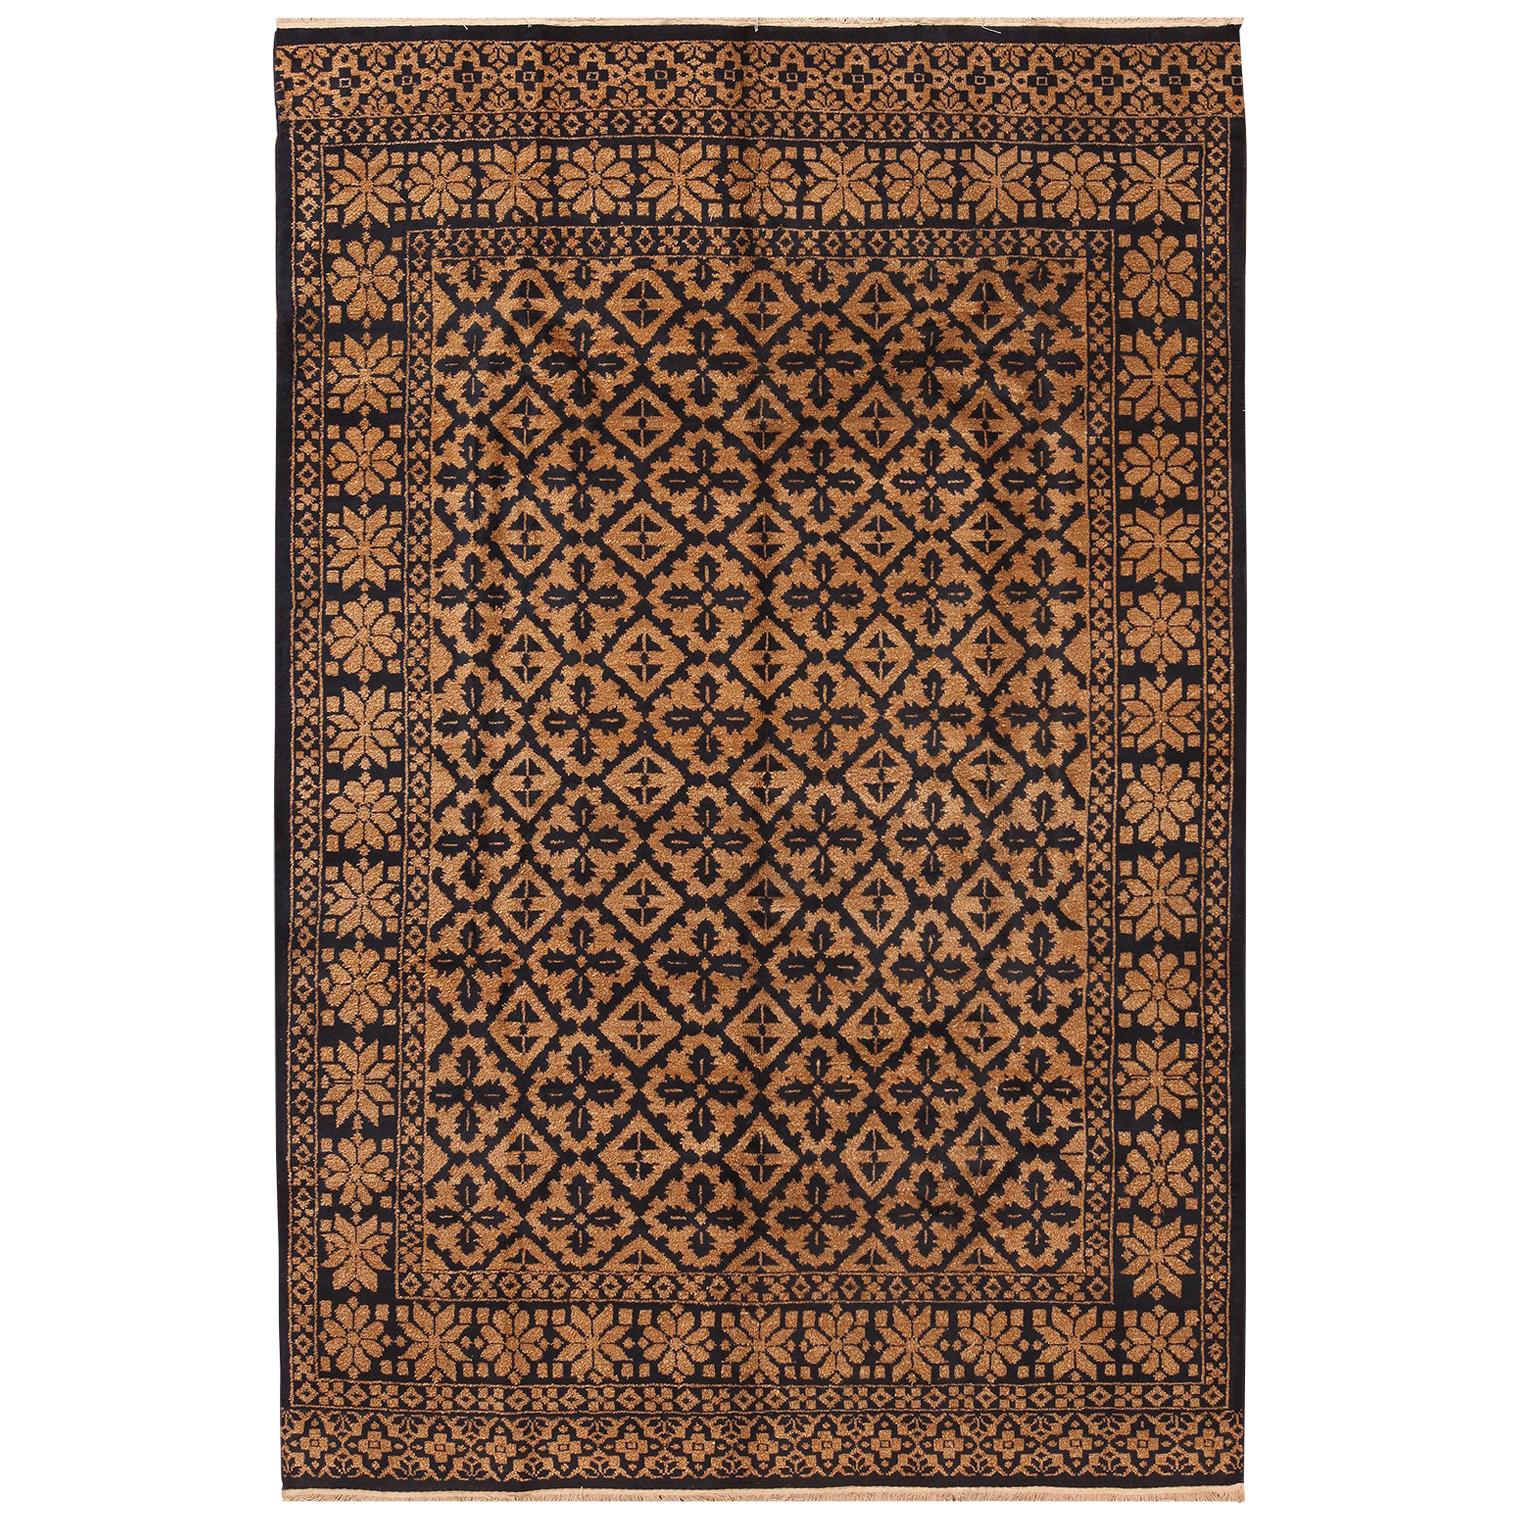 Magnifique tapis indien moderne et géométrique. 6 pieds x 9 pieds en vente